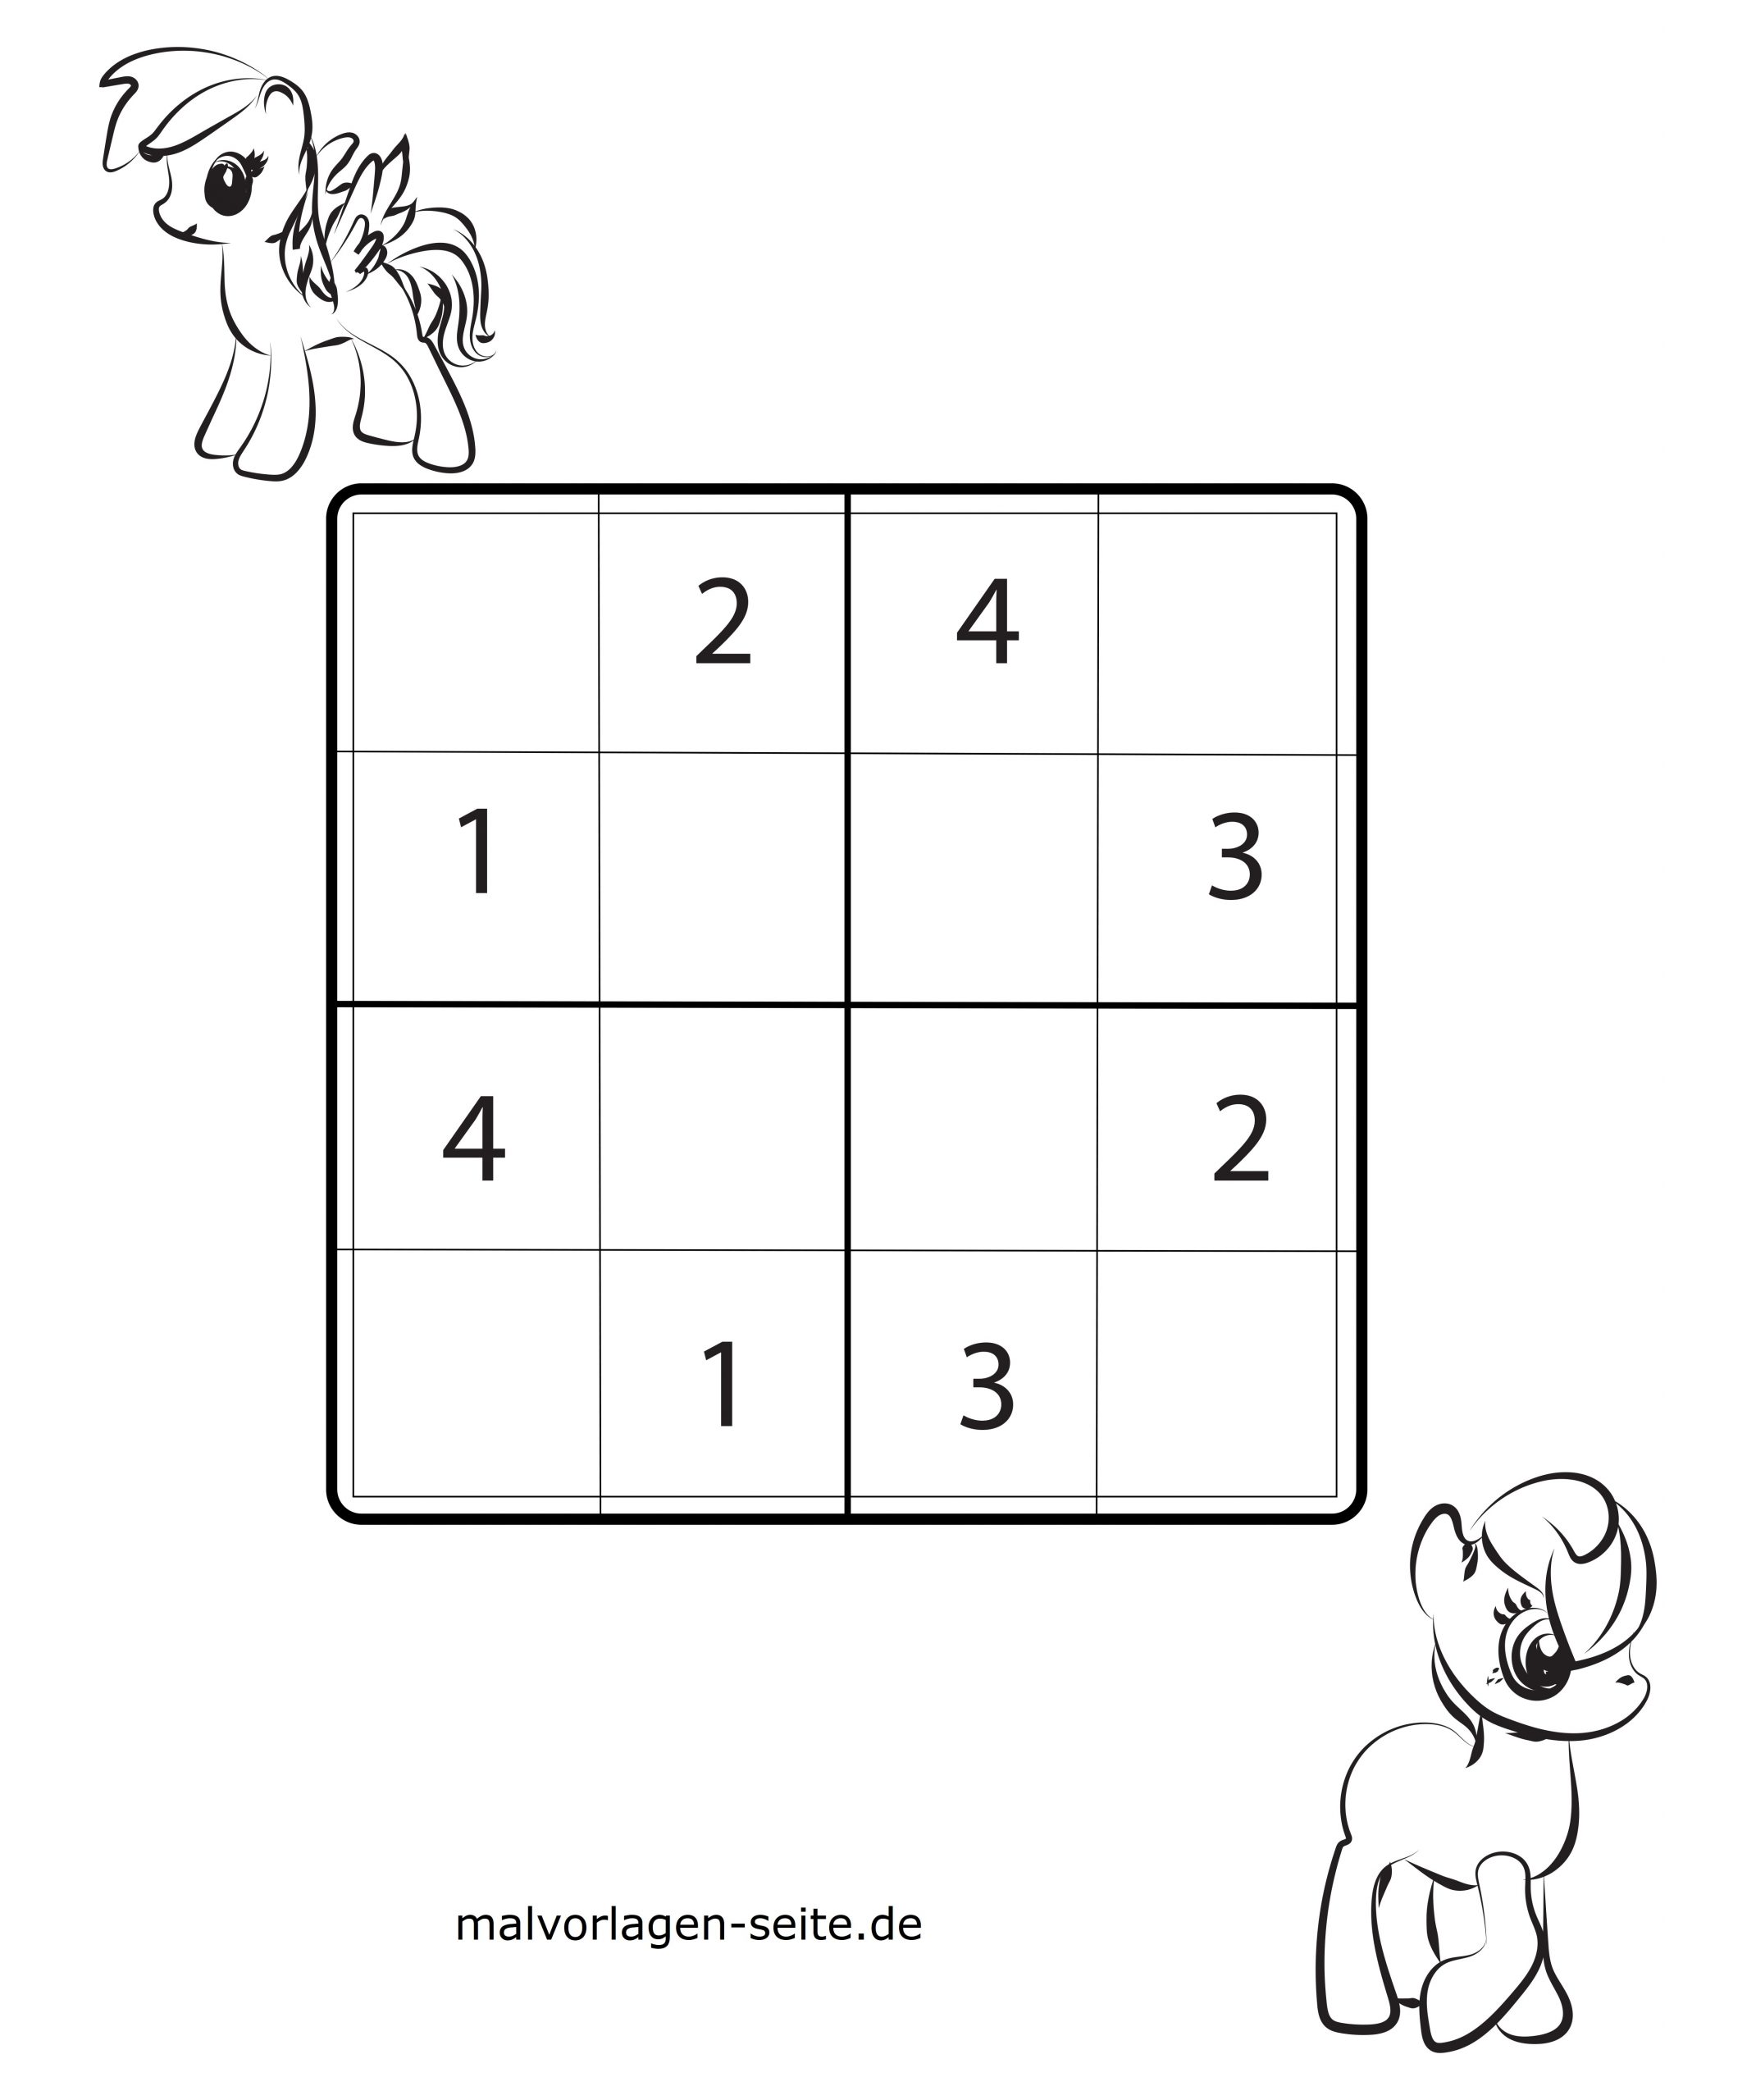 Sudoku Einfach Zum Ausdrucken - kinderbilder.download ...